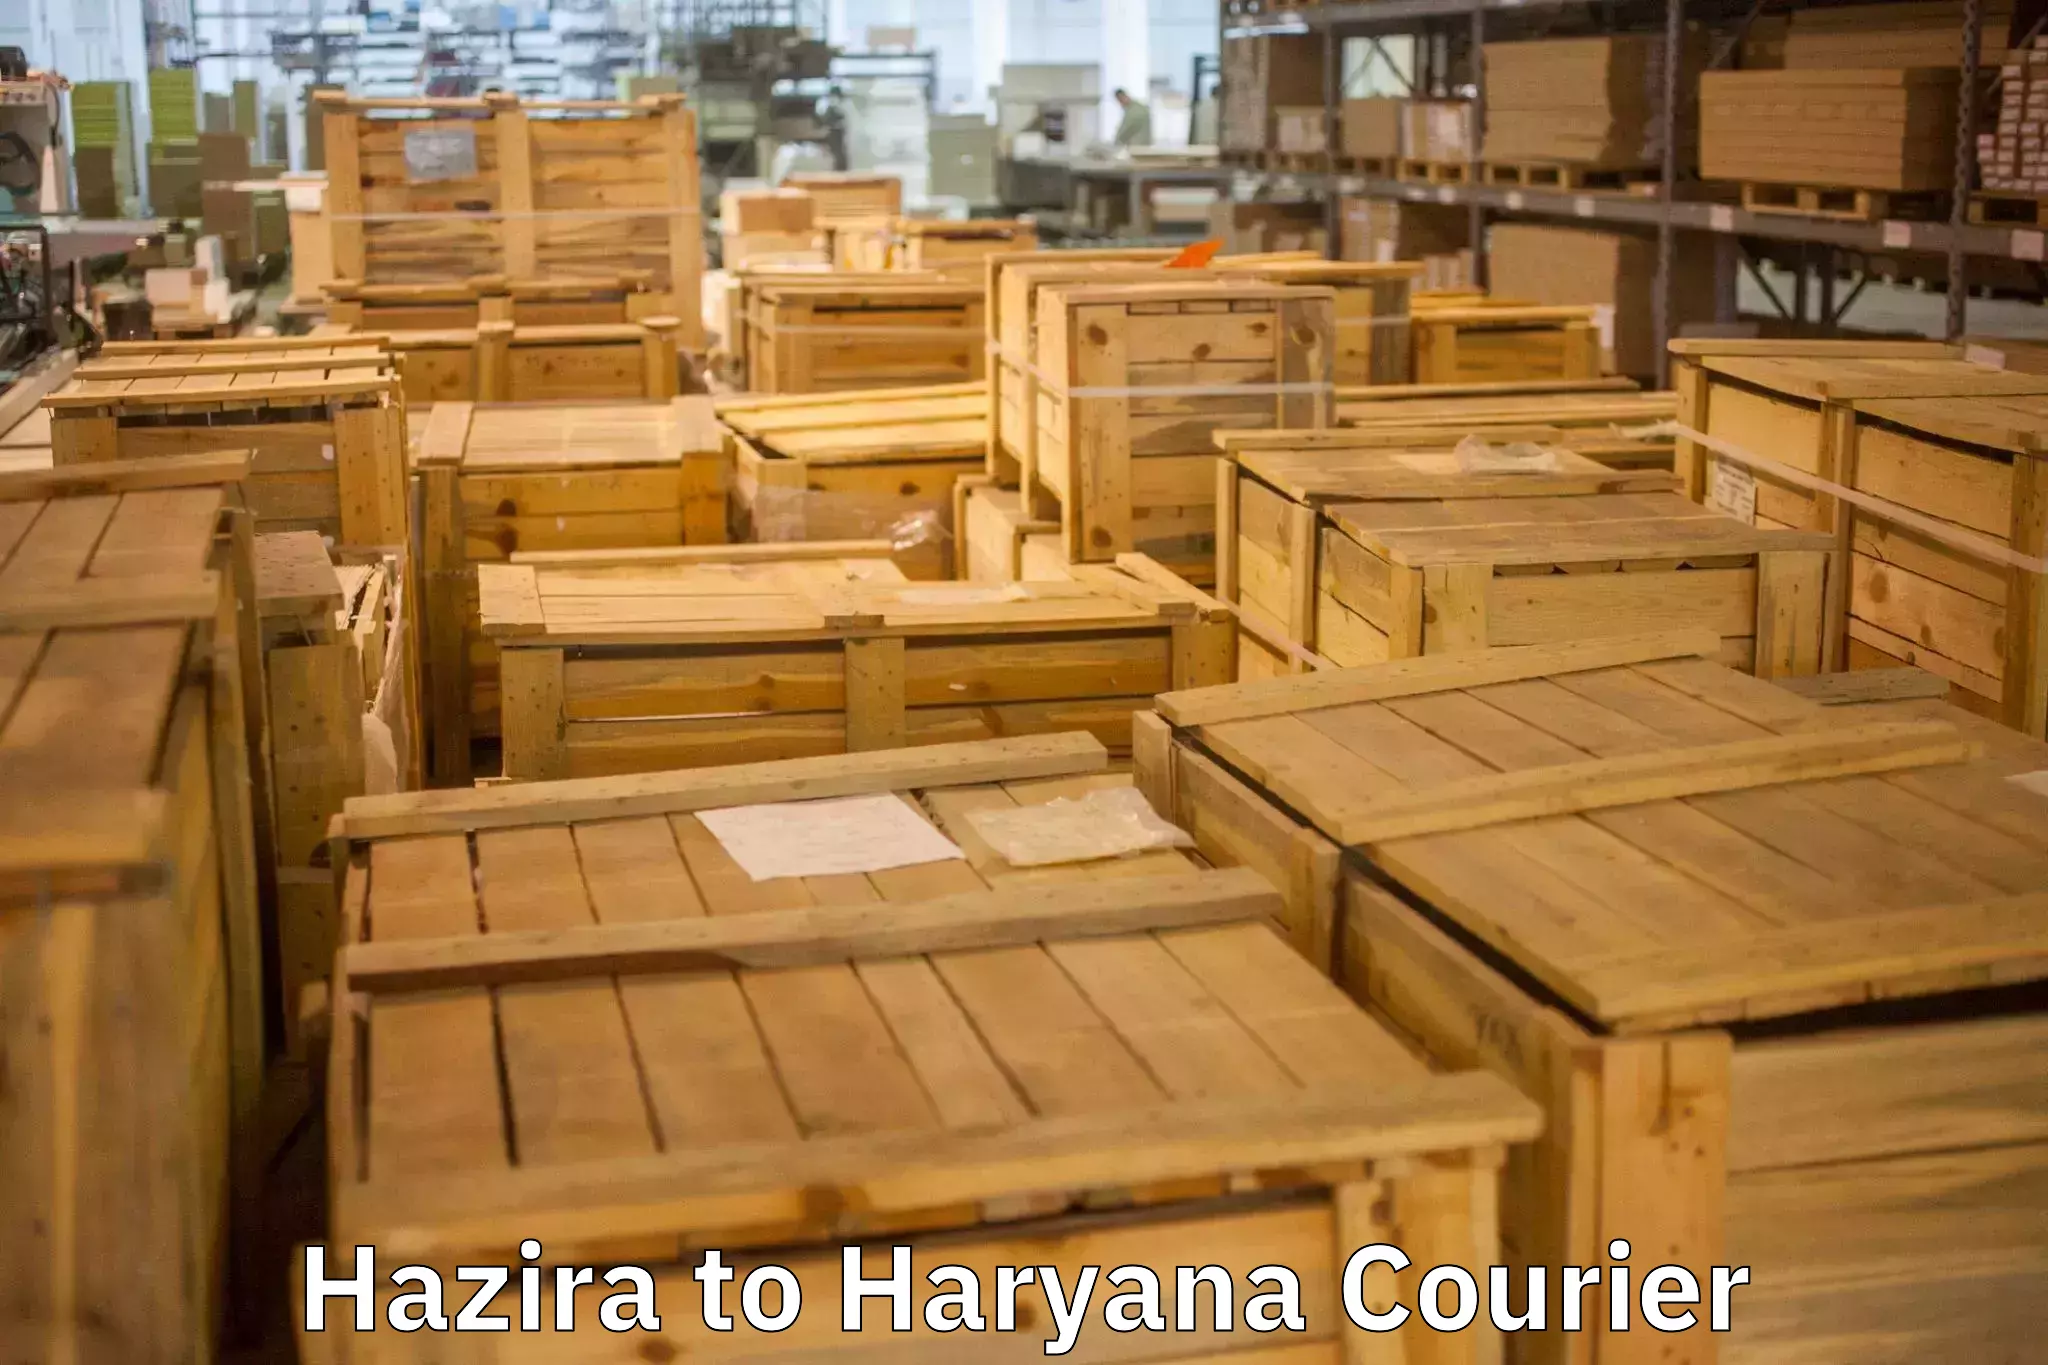 Moving and handling services Hazira to Kurukshetra University